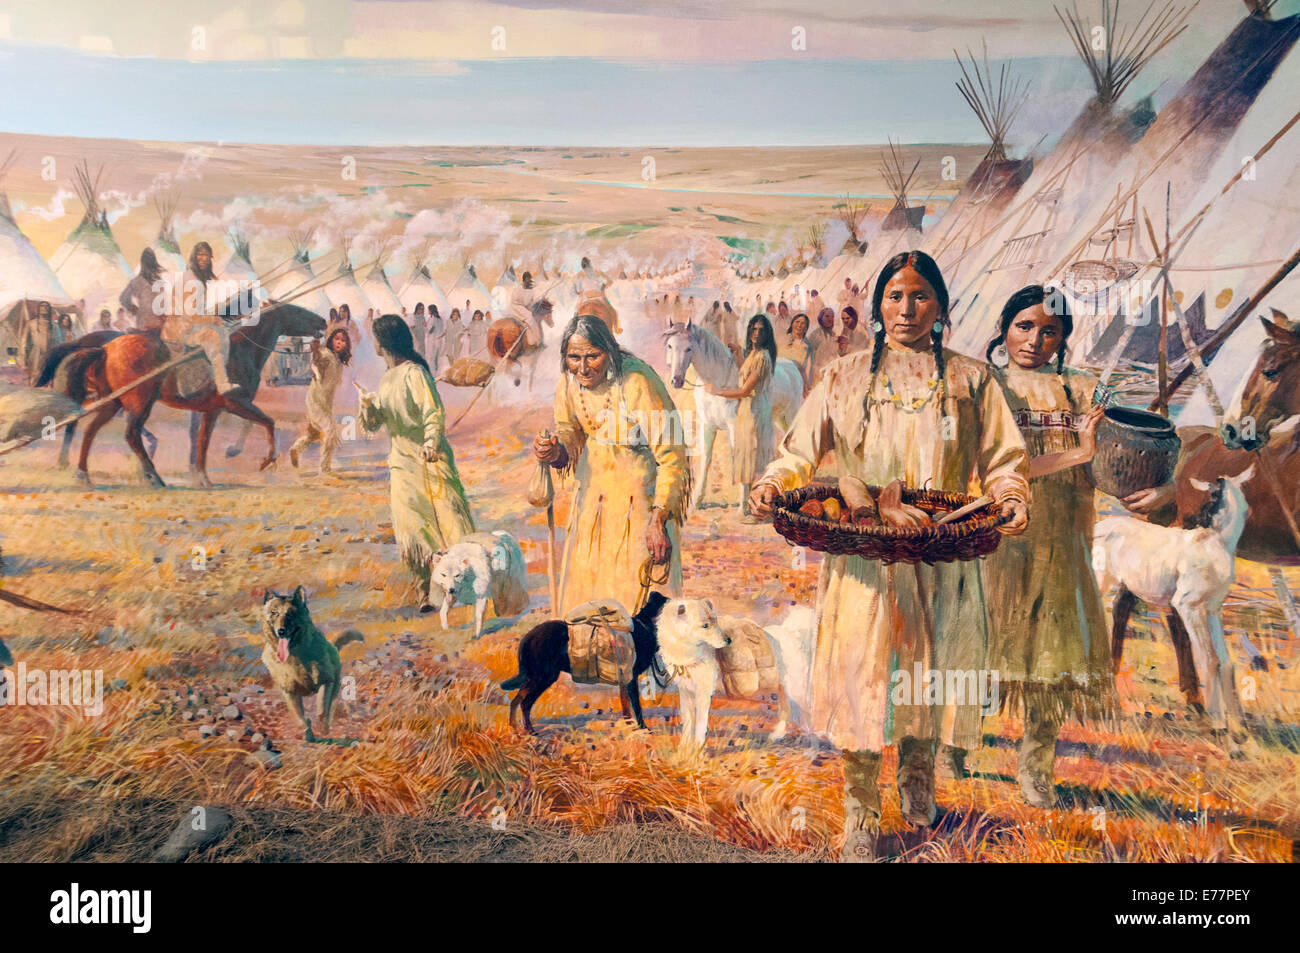 Elk203-5285 Canada, Alberta, Edmonton, Royal Alberta Museum, Indian camp painting Stock Photo